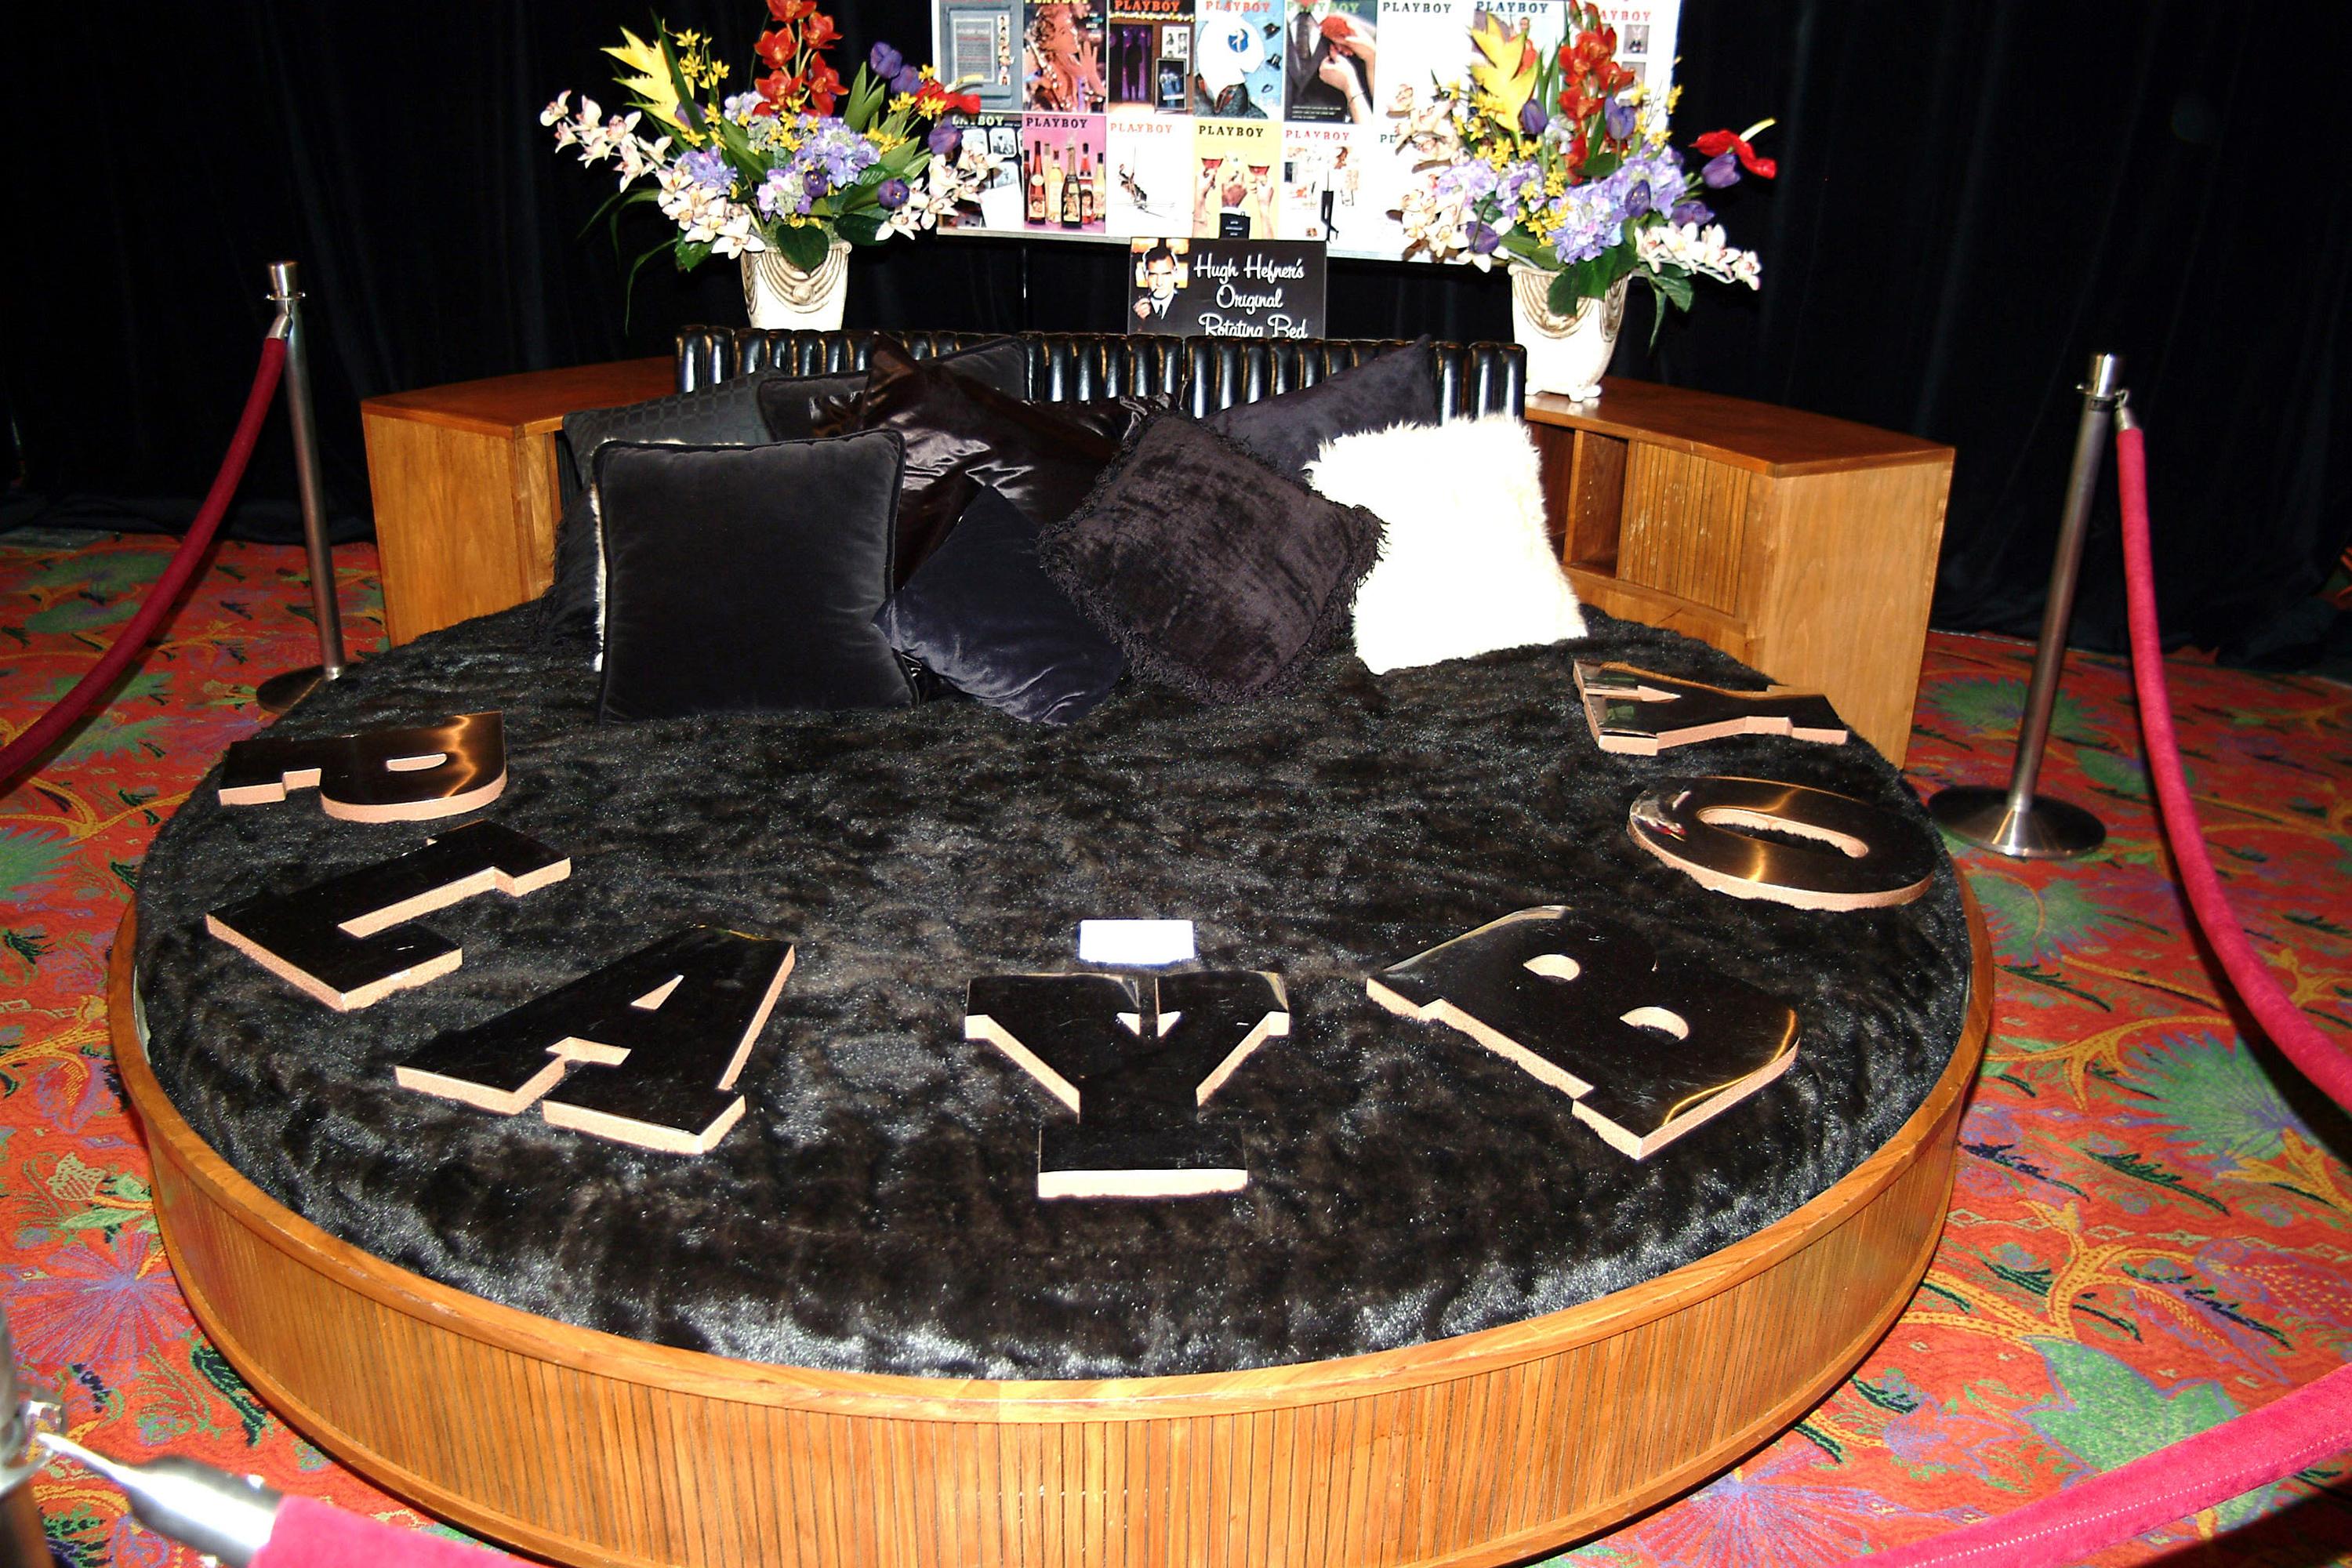 Le fameux lit de Hugh Hefner, ici lors d'une vente aux enchères pour les 50 ans de Playboy. [Getty Images - Bryan Haraway]